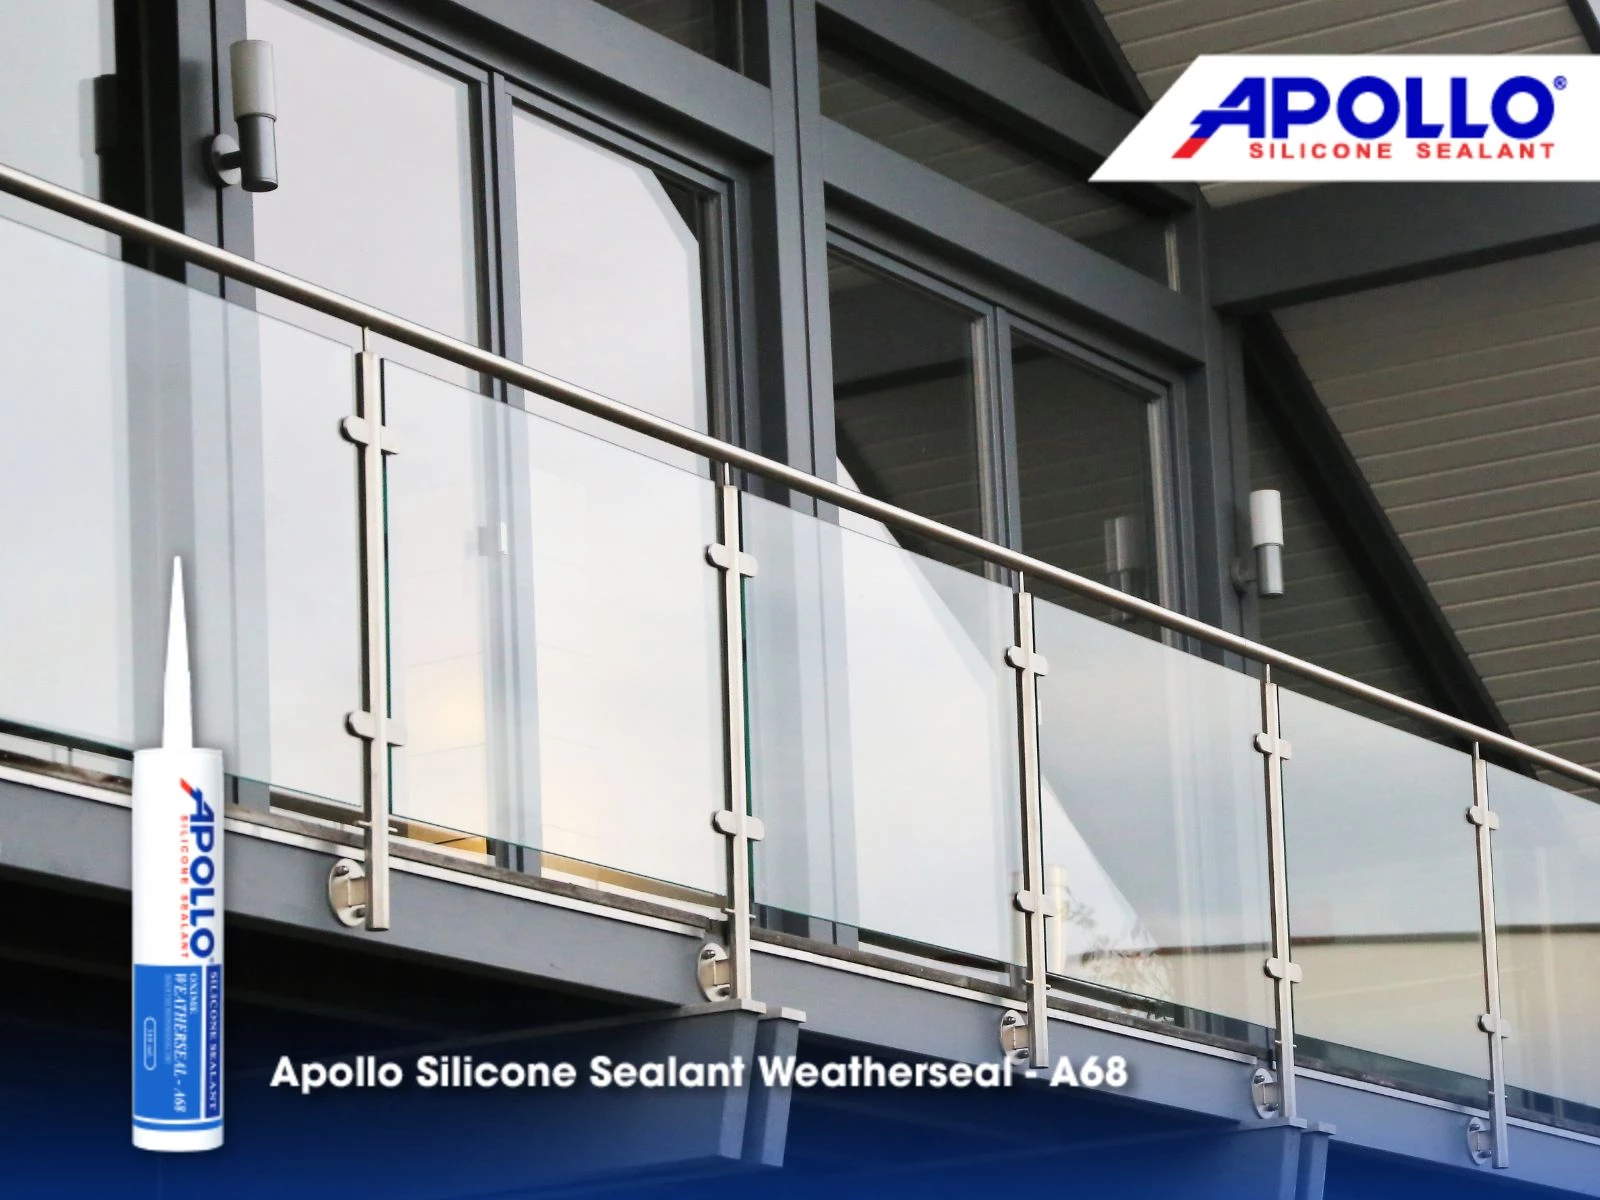 Apollo Silicone Sealant Weatherseal - A68 phù hợp các hạng mục thi công kính ngoài trời